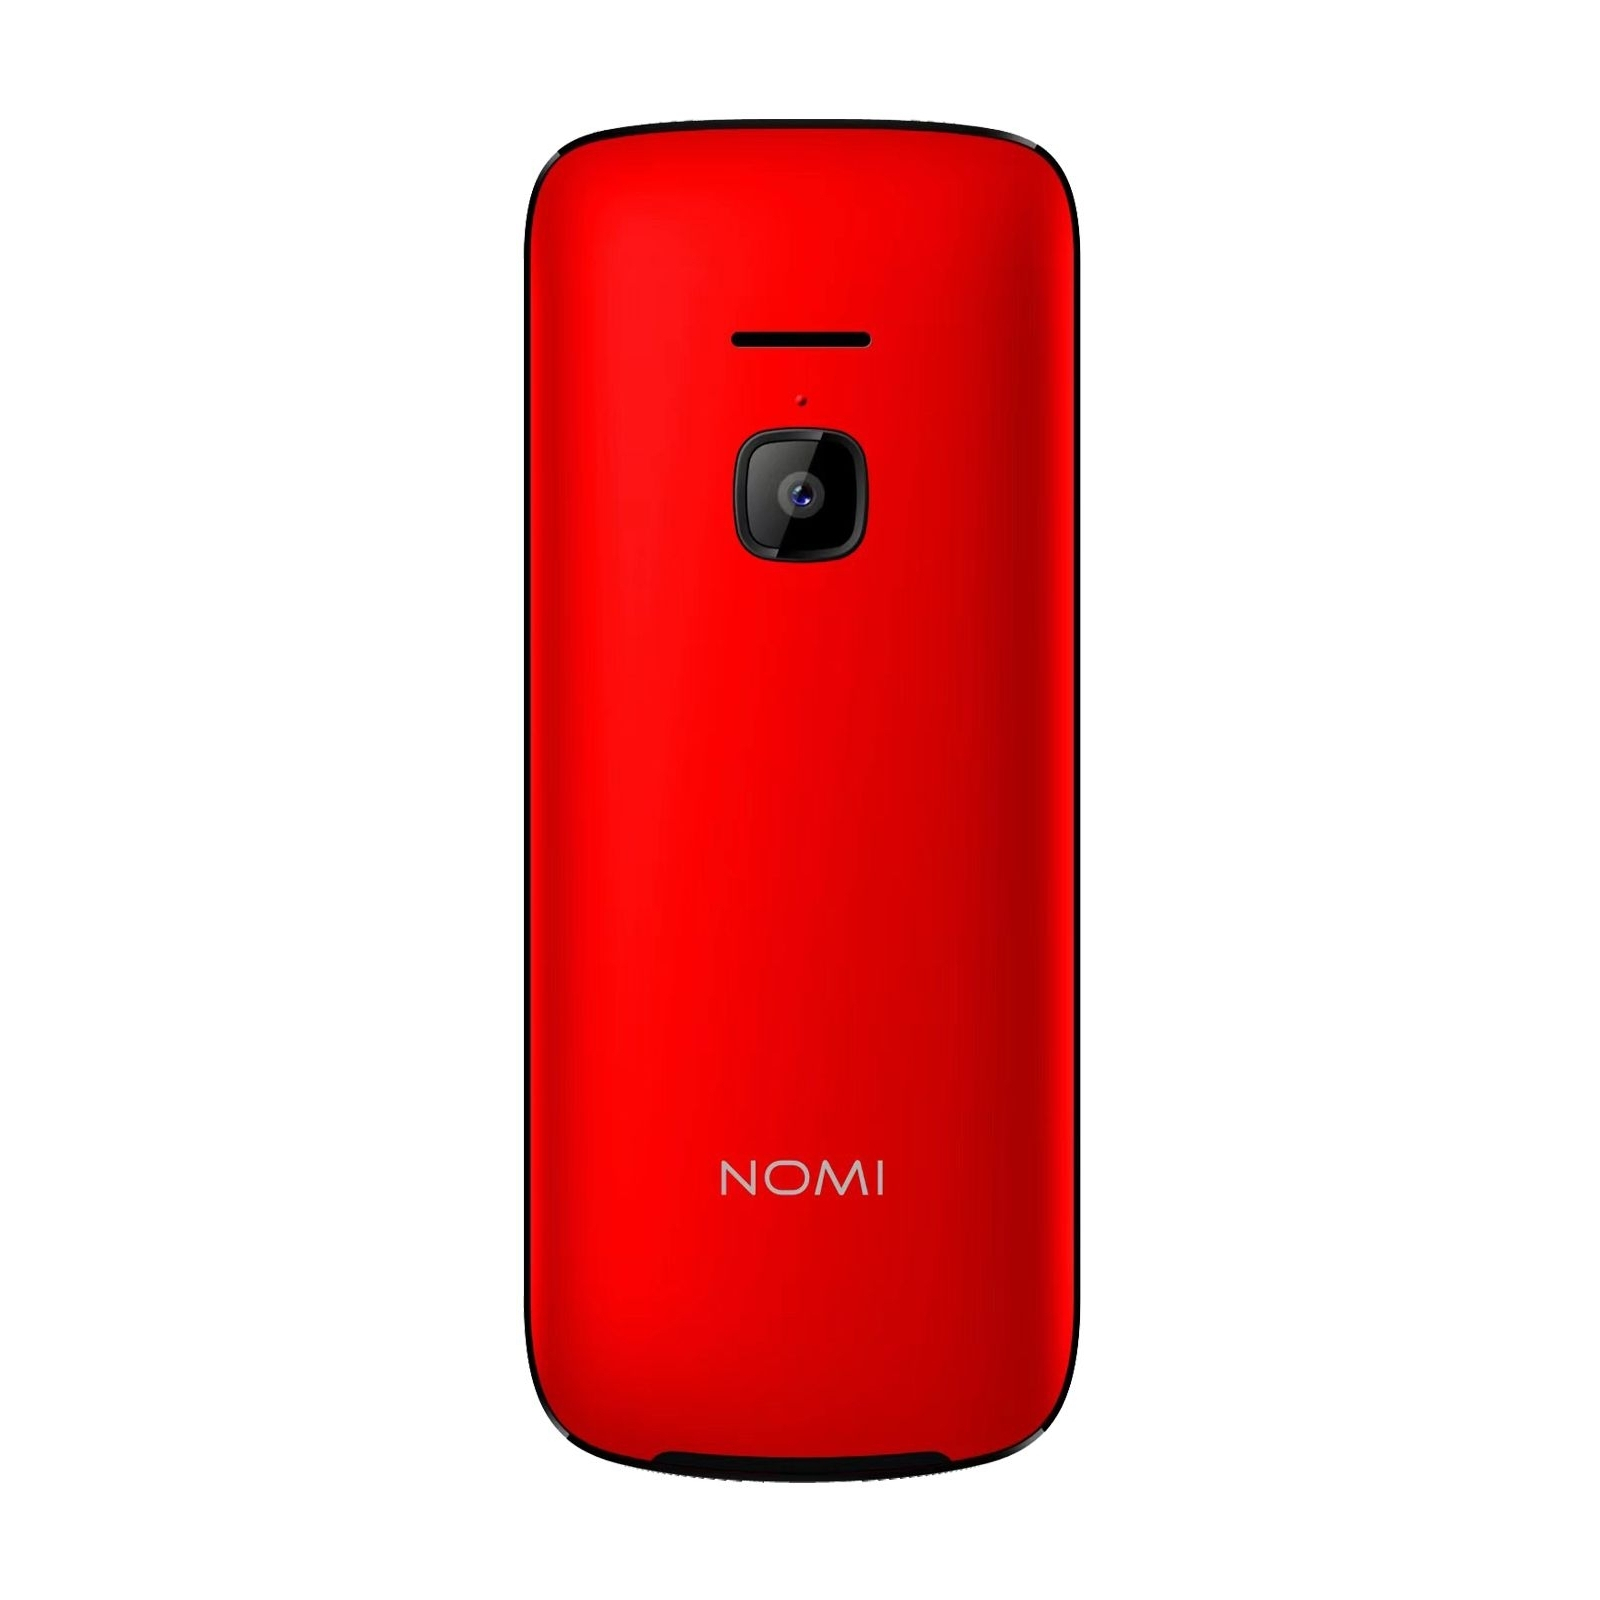 Мобильный телефон Nomi i2403 Black изображение 2